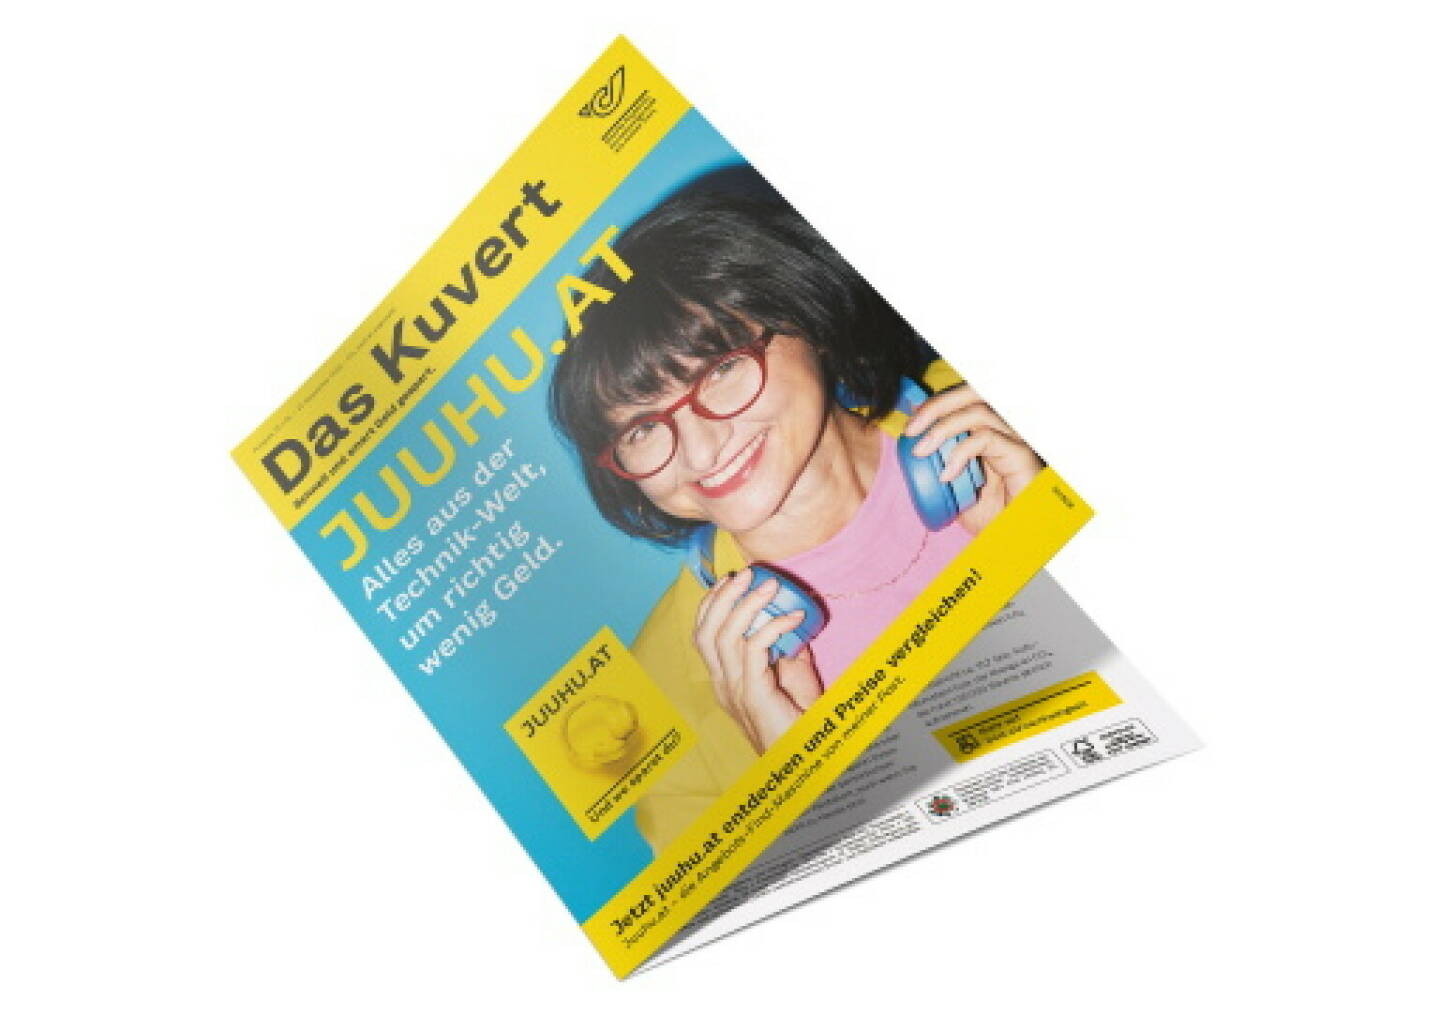 Flugblatt-Werbemedium Das Kuvert“ der Post mit den Gütesiegeln FSC und Österreichisches Umweltzeichen. Credit: Post